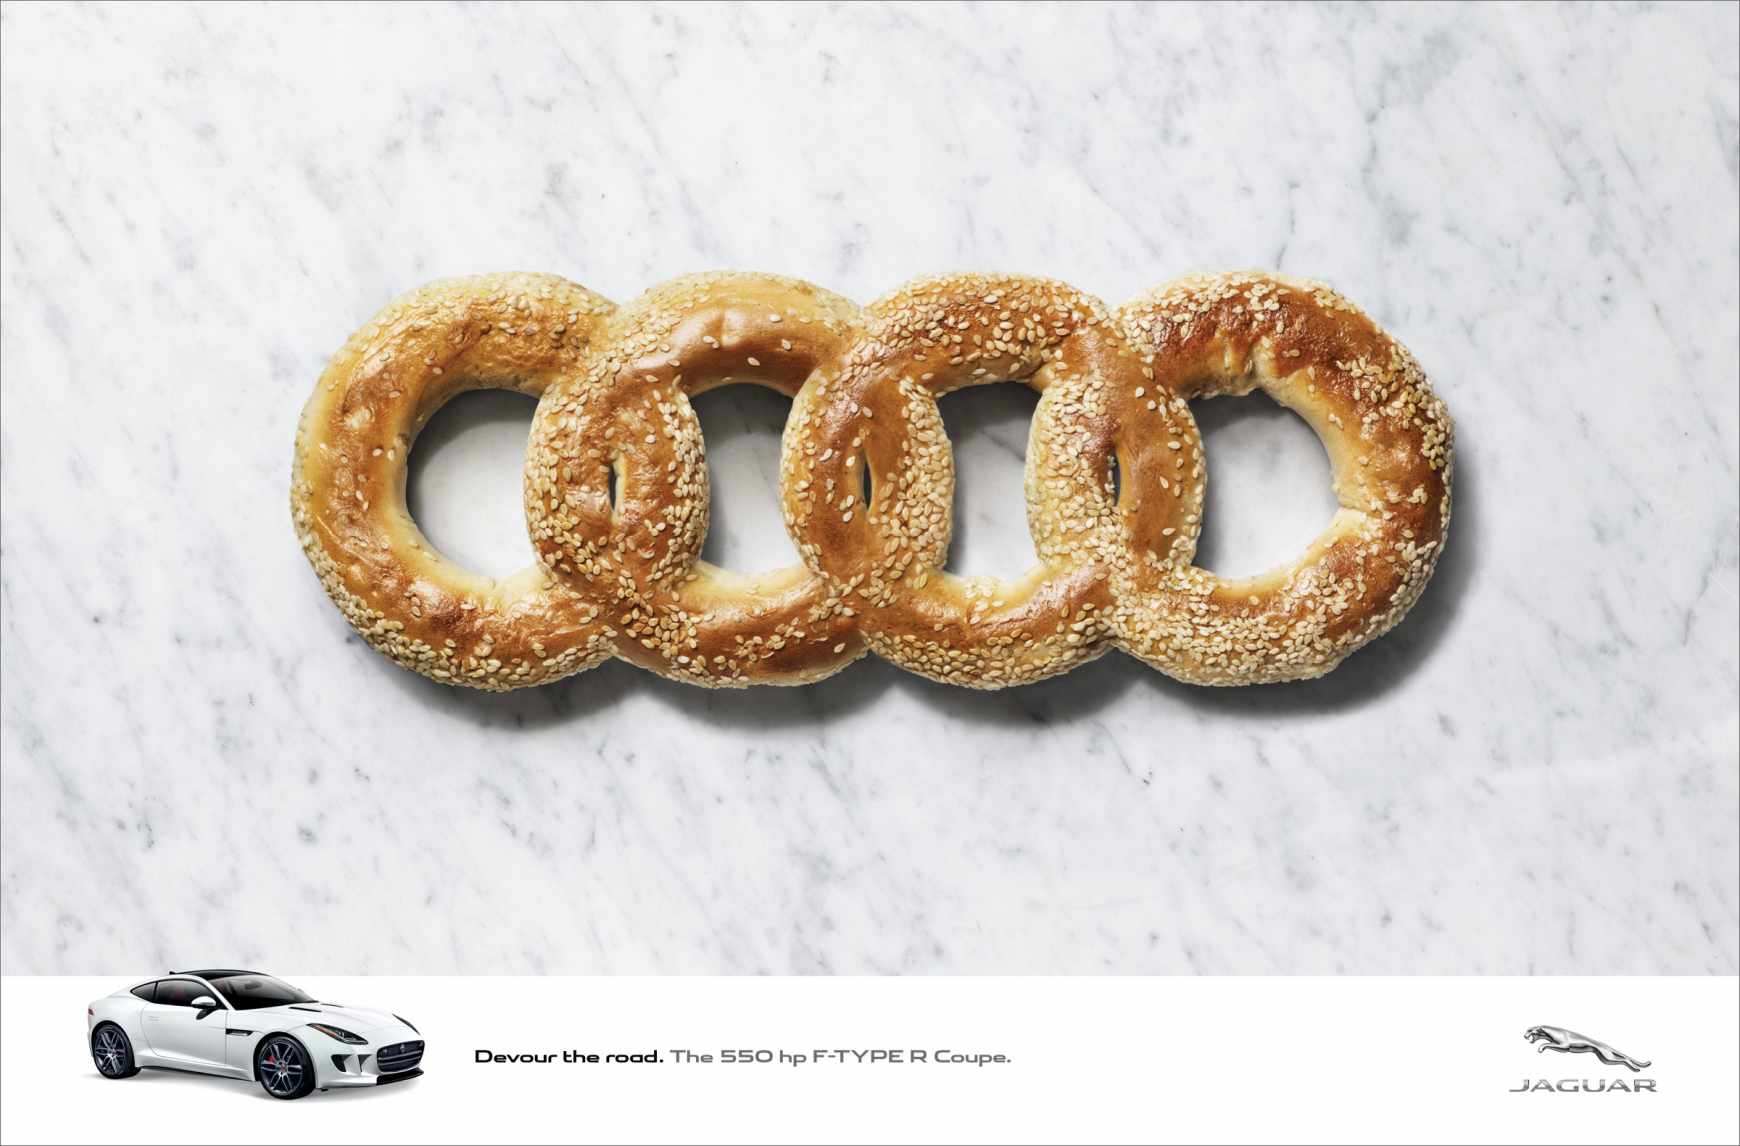 上海广告设计公司分享-捷豹汽车“竞争对手logo篇”平面广告创意设计-奥迪篇